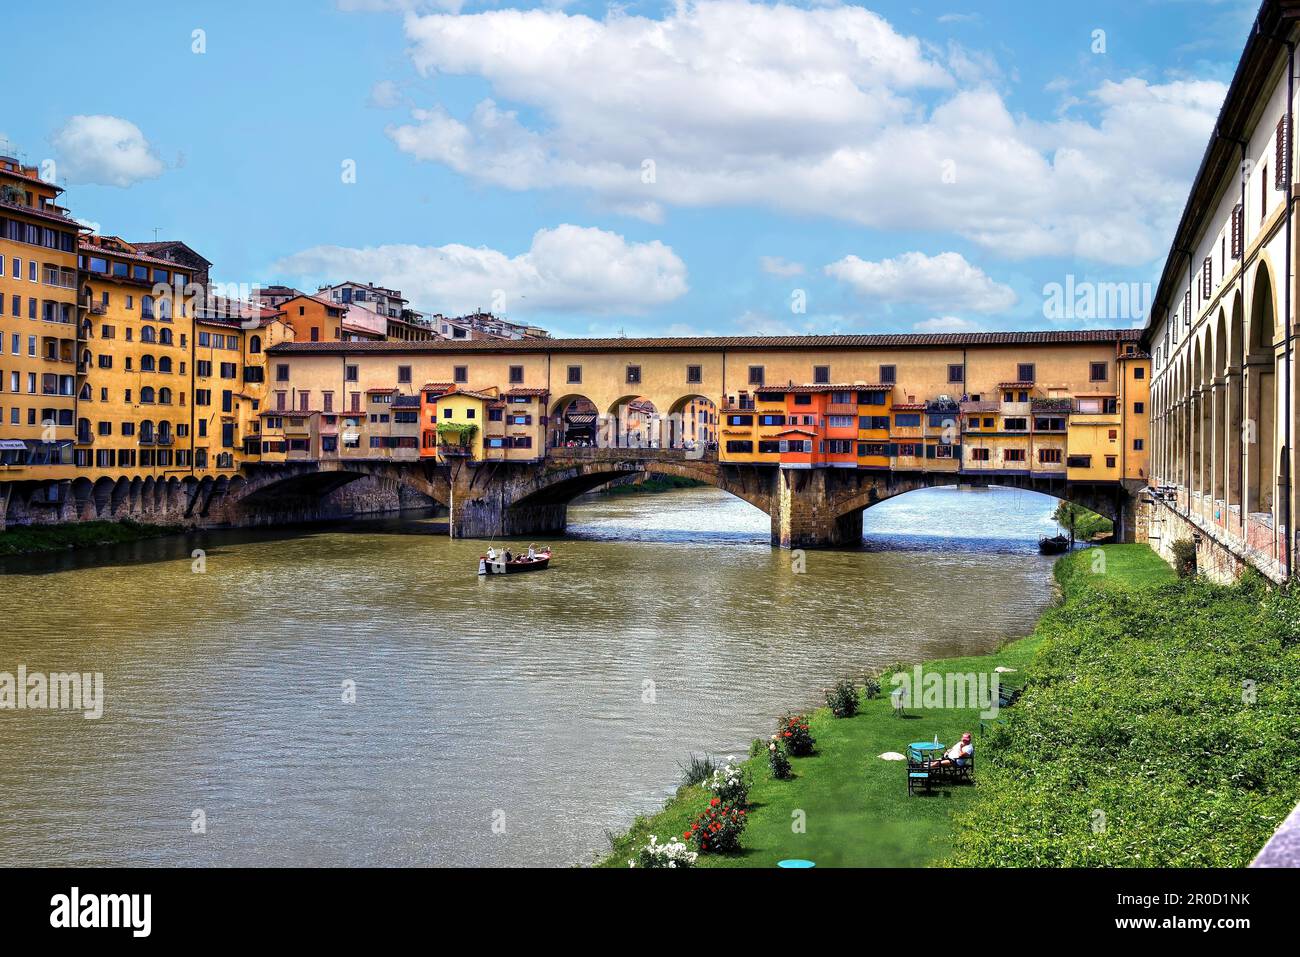 Florenz, Italien, 10. Mai 2018: Die Ponte Vecchio, die mittelalterliche steinerne Brücke über den Fluss Arno, die noch Geschäfte entlang gebaut, mit dem Fluss b Stockfoto